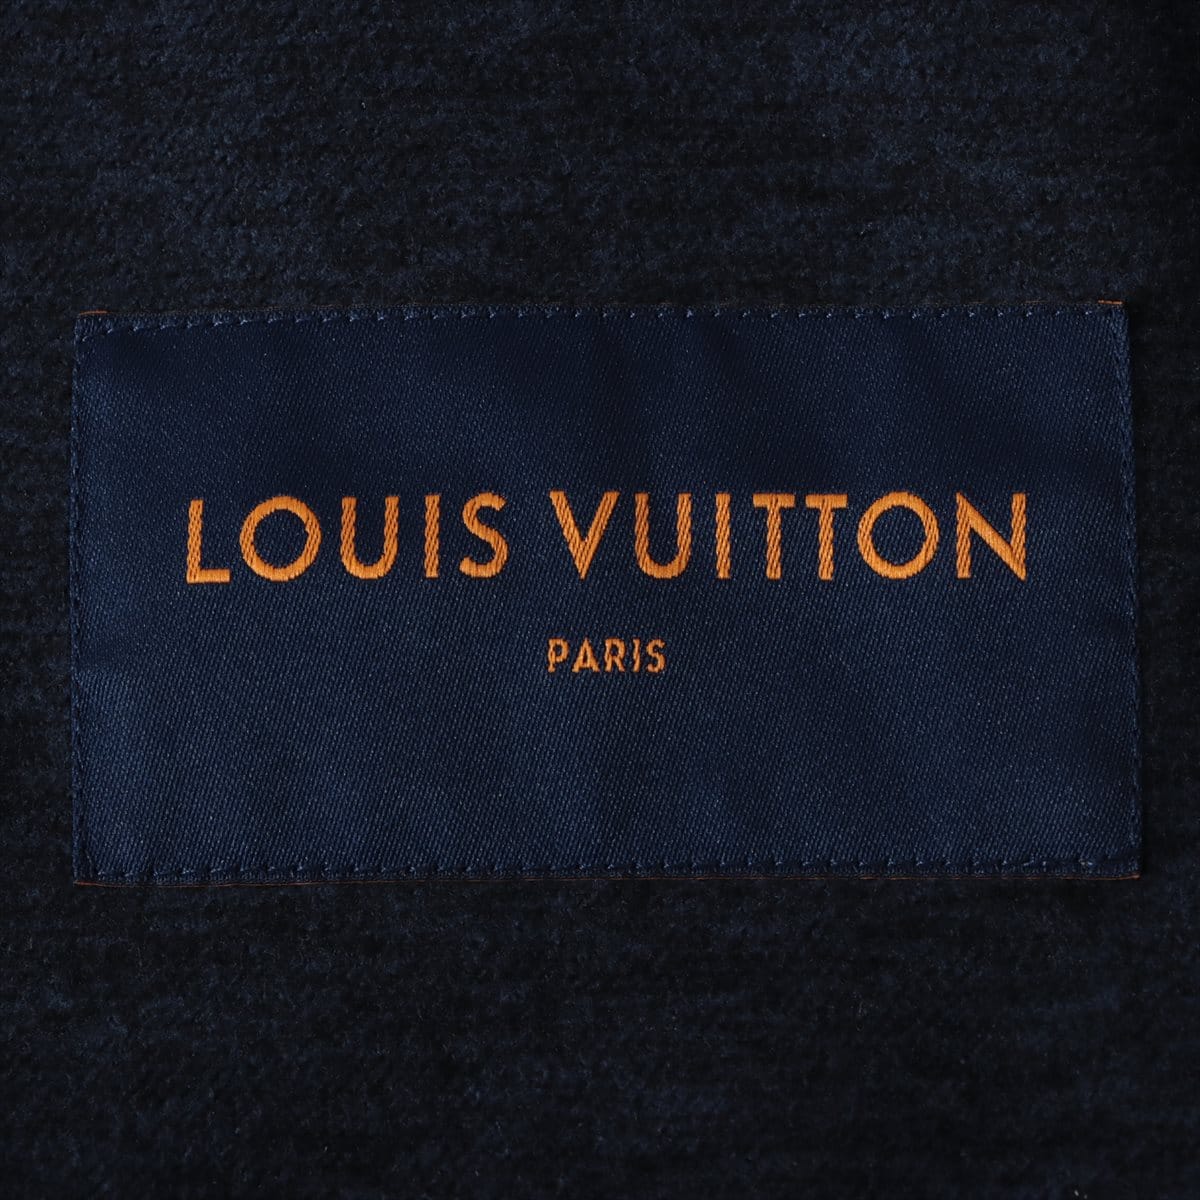 BENİM KOKUM Tipi Model Louis Vuitton L'lmmensite Tipi Edp Koku Içerikli ( erkek) Parfüm Fiyatı, Yorumları - Trendyol